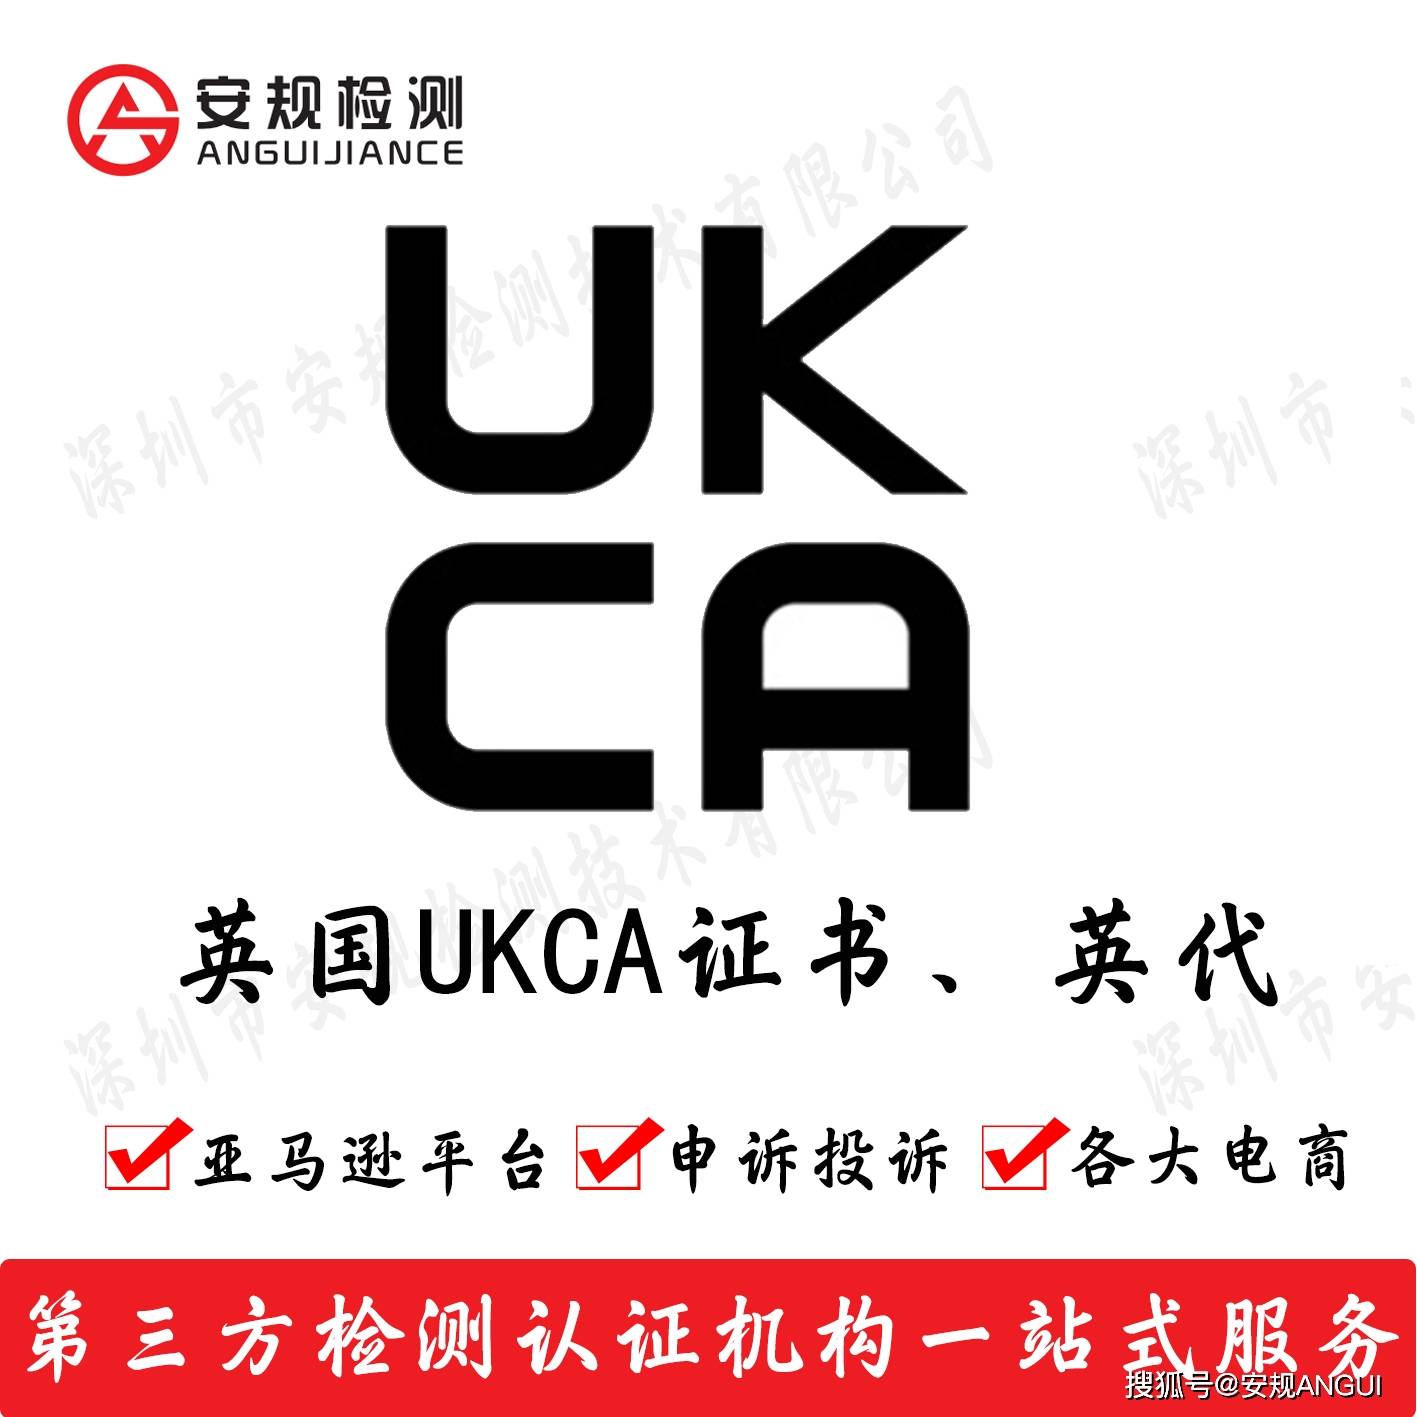 英国ukca标志要求图片